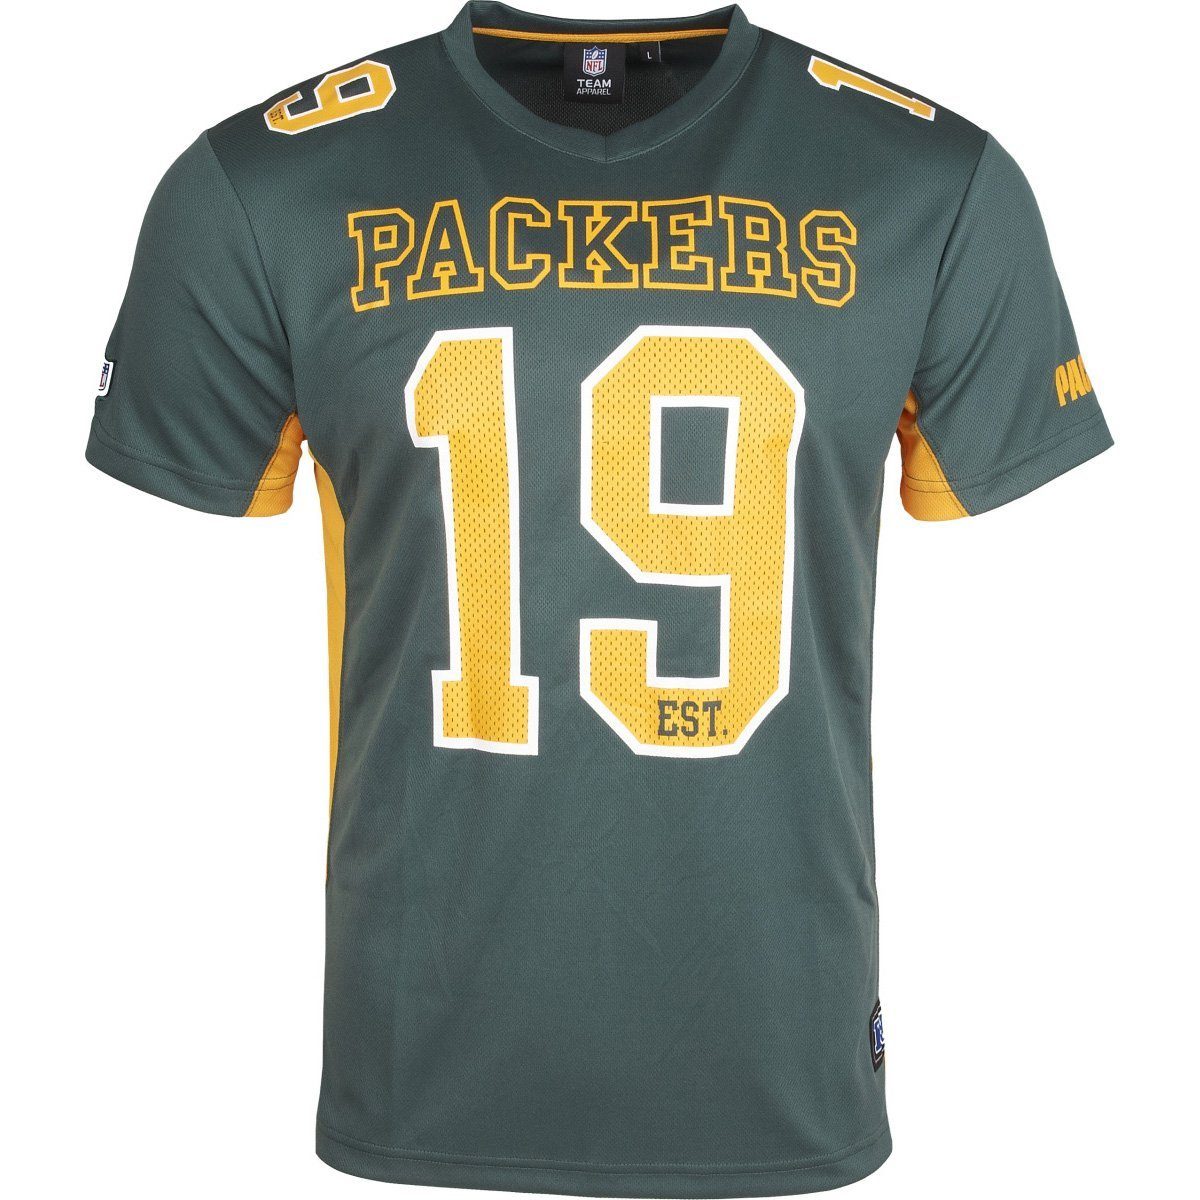 Fanatics Print-Shirt NFL Jersey Green Bay Packers